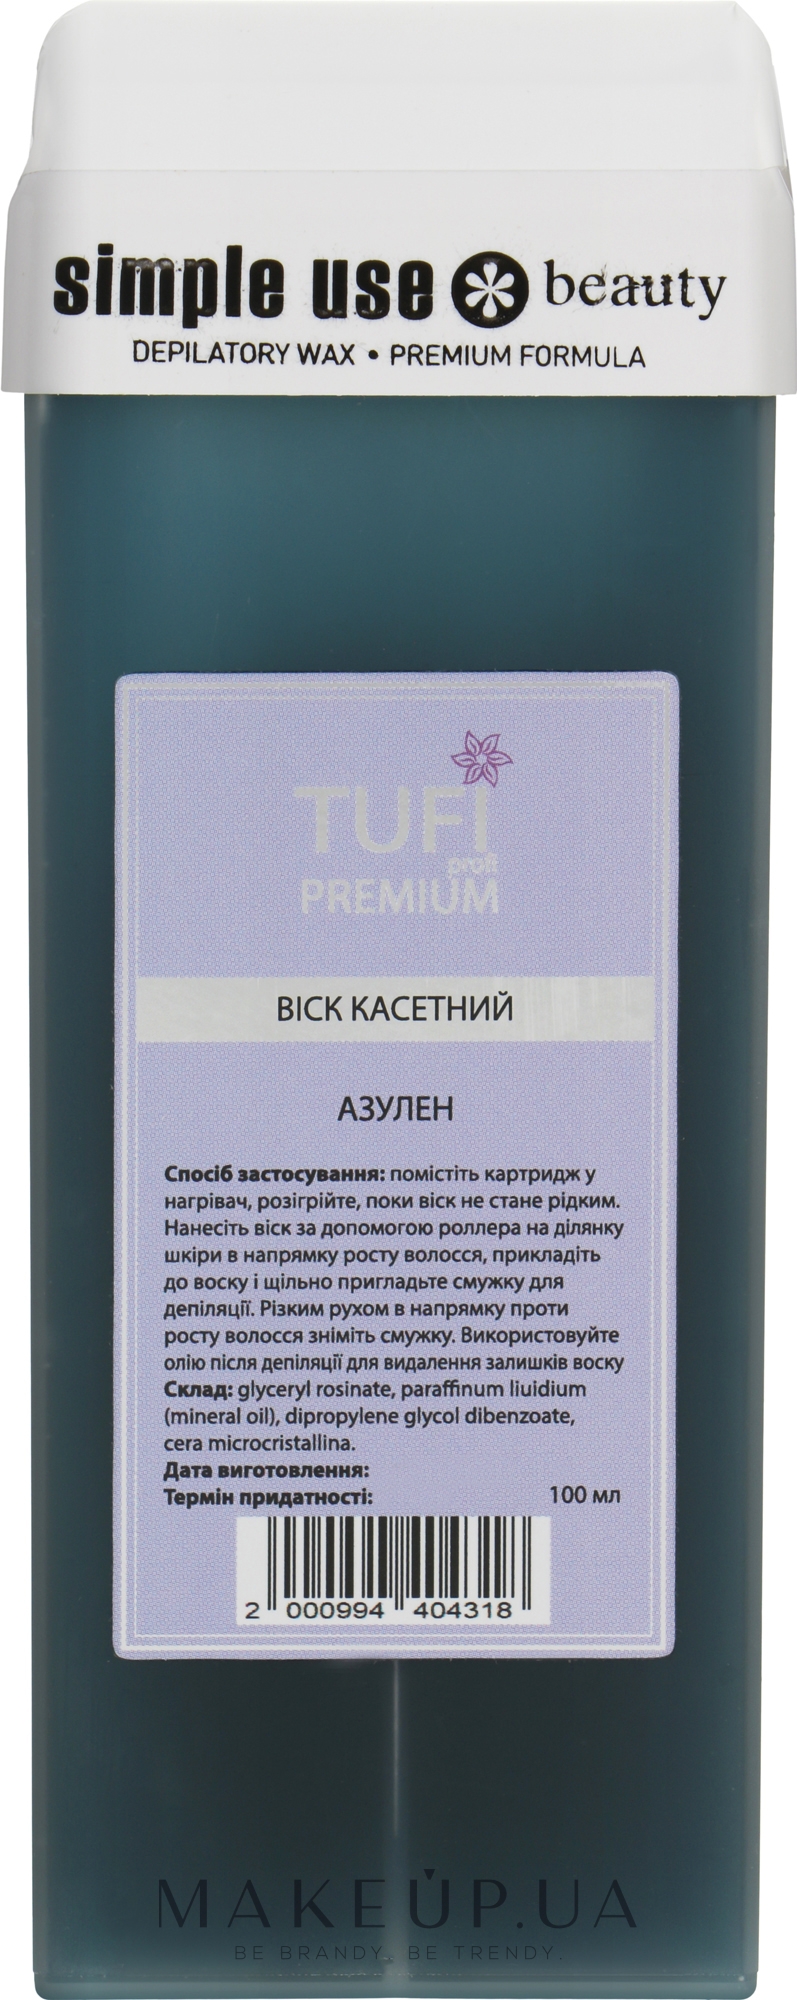 Віск касетний "Азулен" - Tufi Profi Premium — фото 100ml